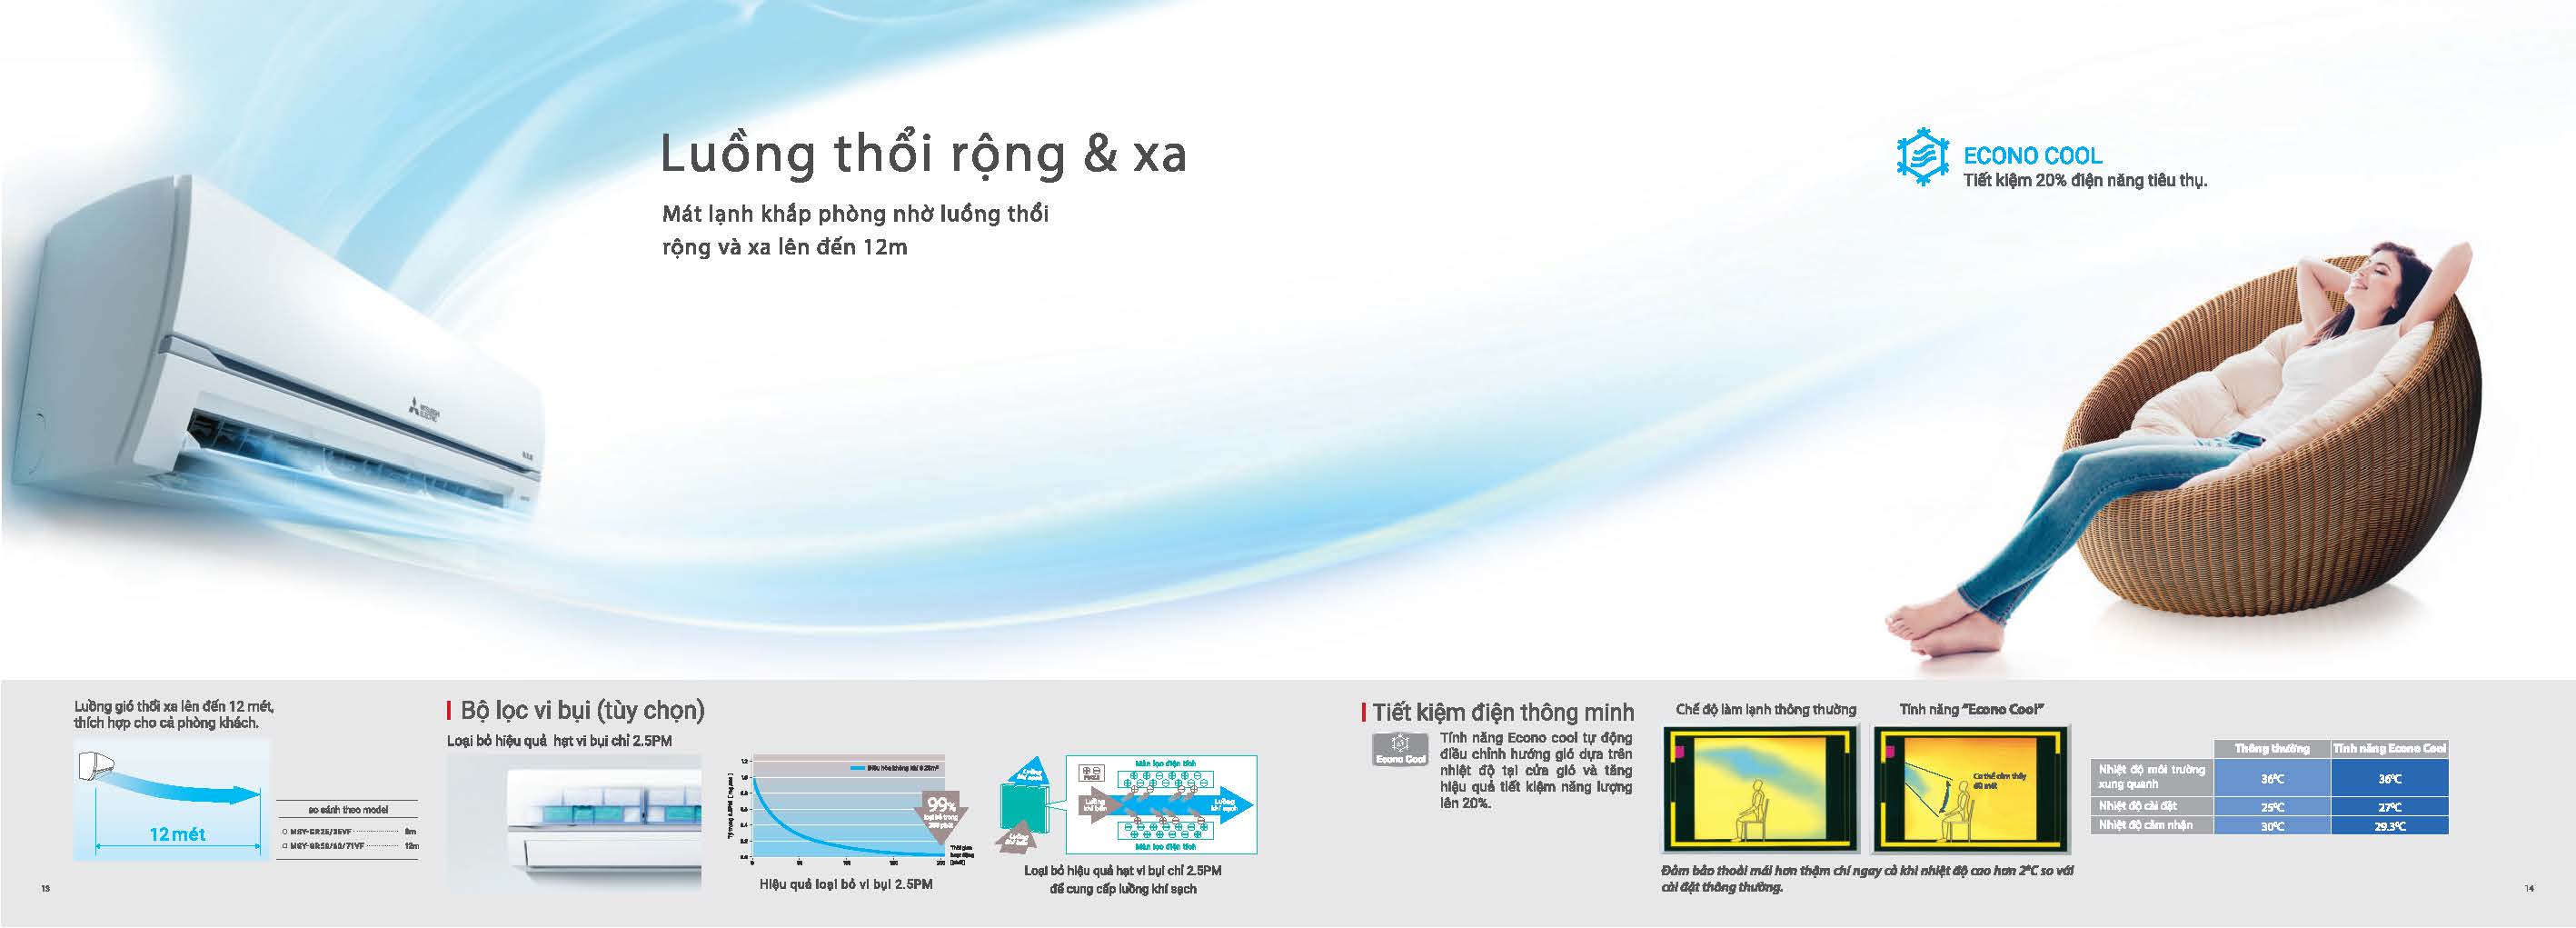 may-lanh-treo-tuong-mitsubishi-electric-model-2021-dmgg_Page_08.jpg